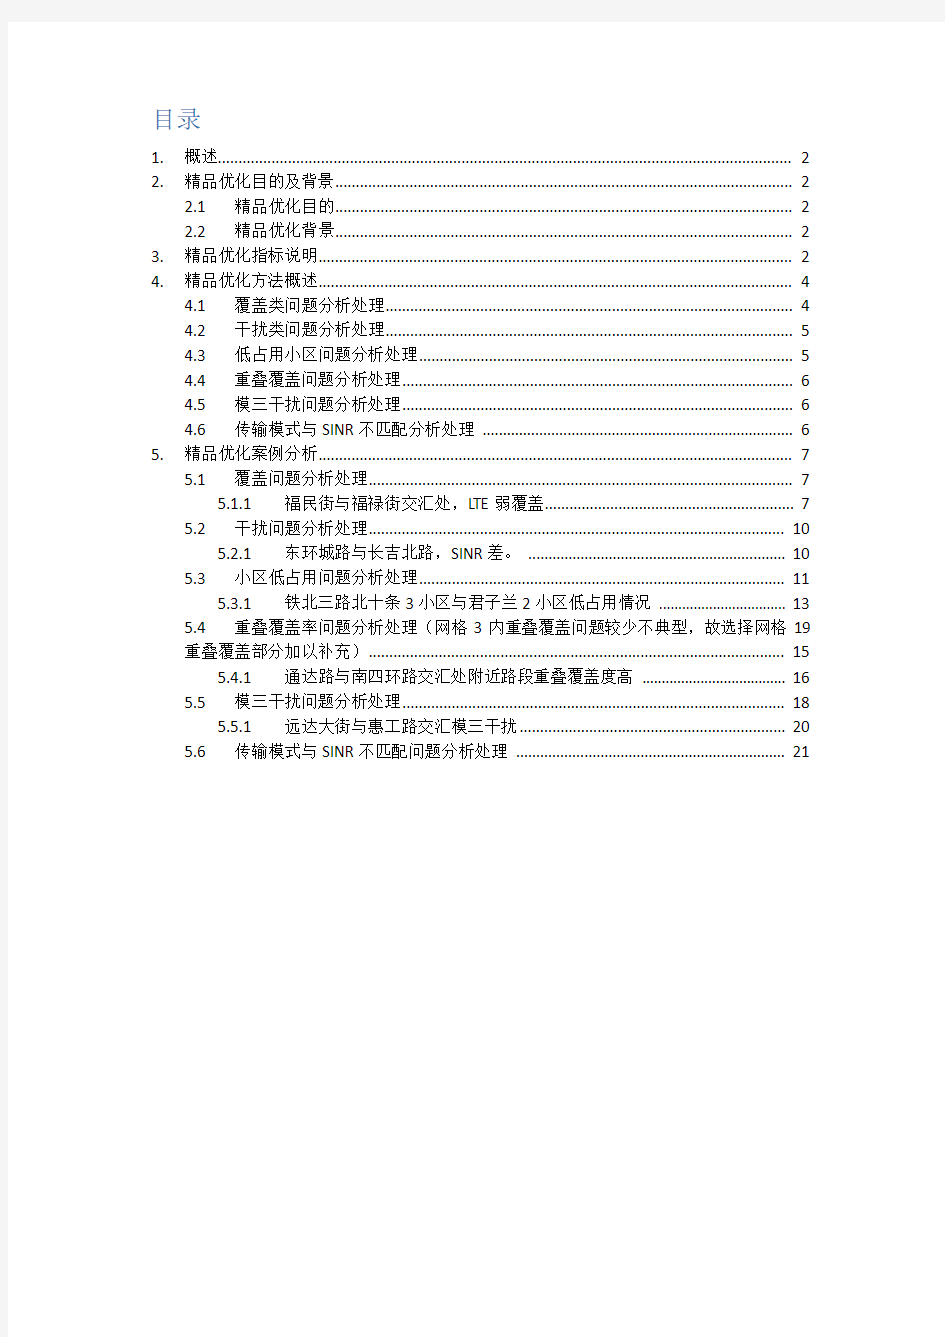 (完整版)LTE精品网格优化指导手册-20150120